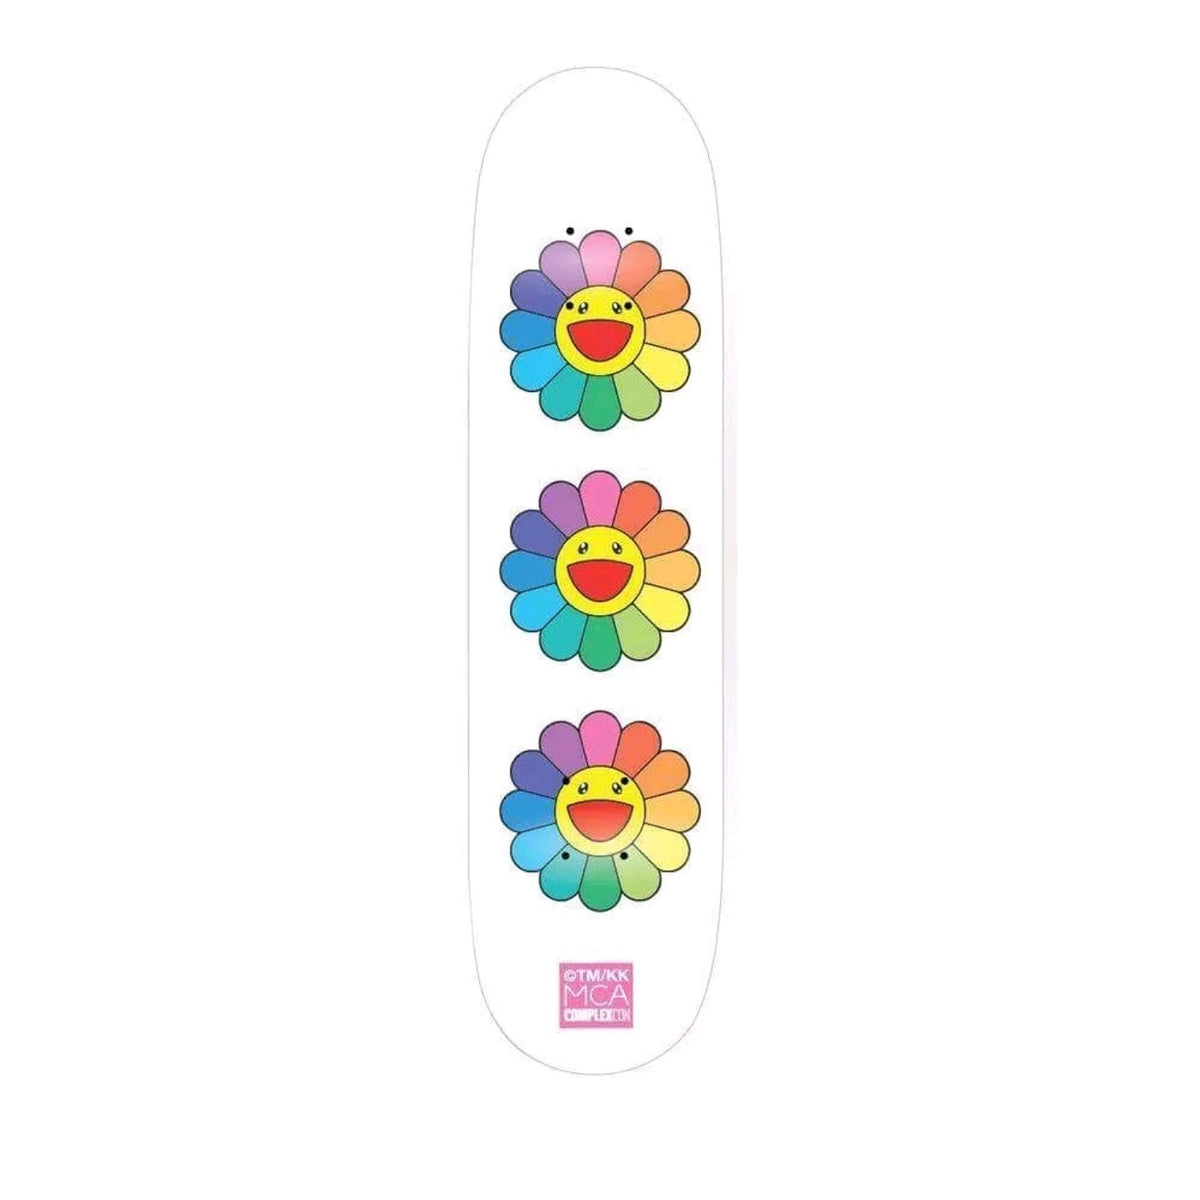 Takashi Murakami Skateboard - White Floral Edition